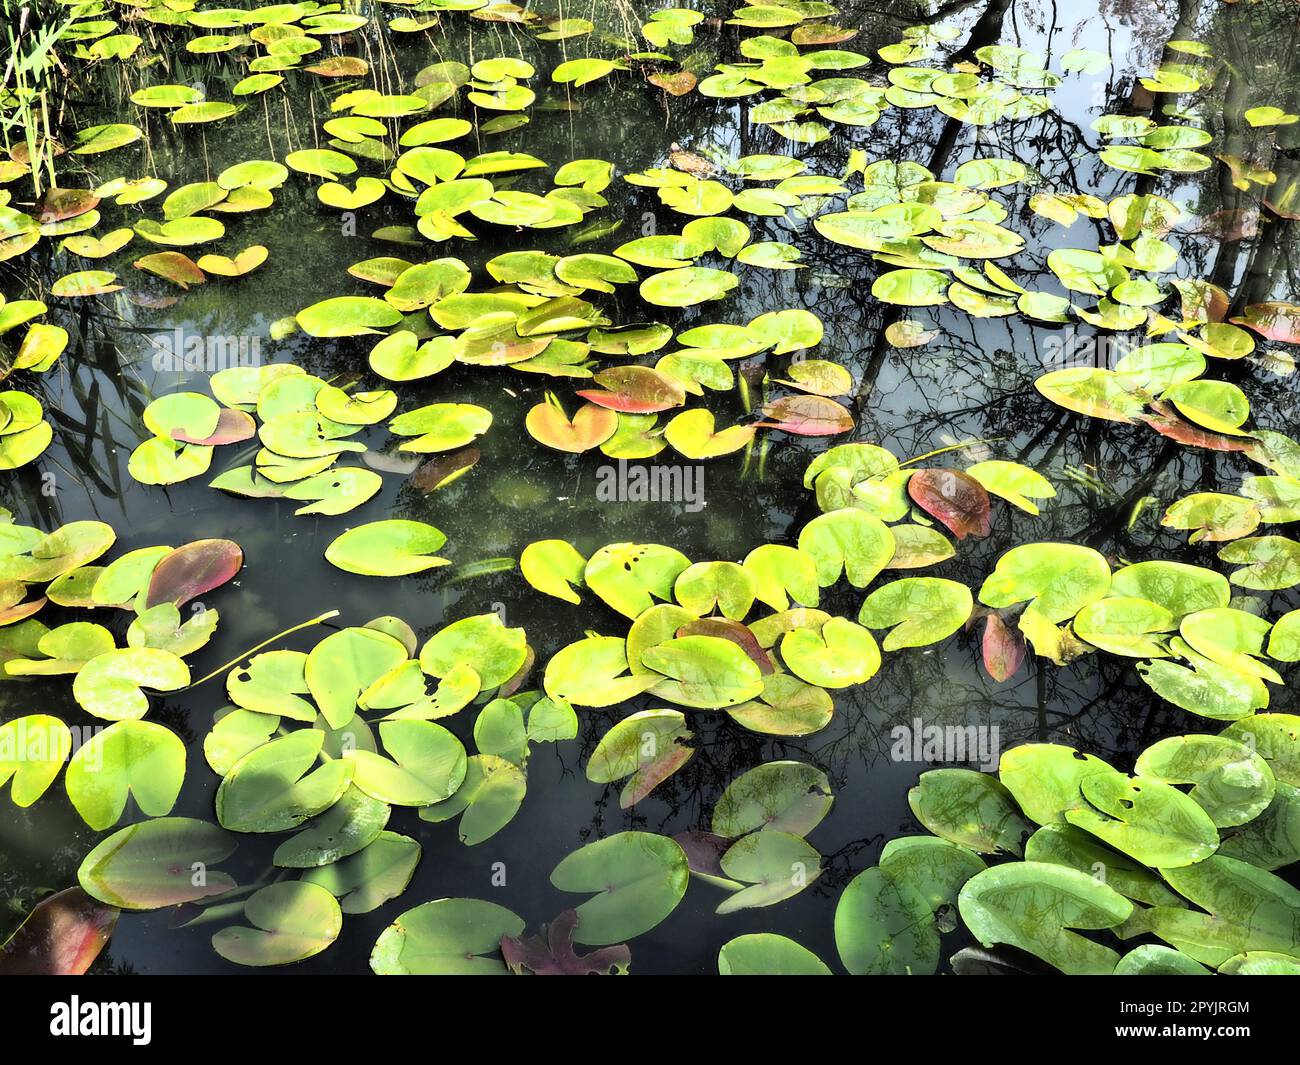 Wasserlienblätter, auch bekannt als Lilienpads. Große rissige und gelbe Blätter einer Wasserpflanze auf der Oberfläche eines Teichs oder Sumpfes. Wasserlilie oder Nymphaean Nymphaeaceae - eine Familie blühender Pflanzen Stockfoto